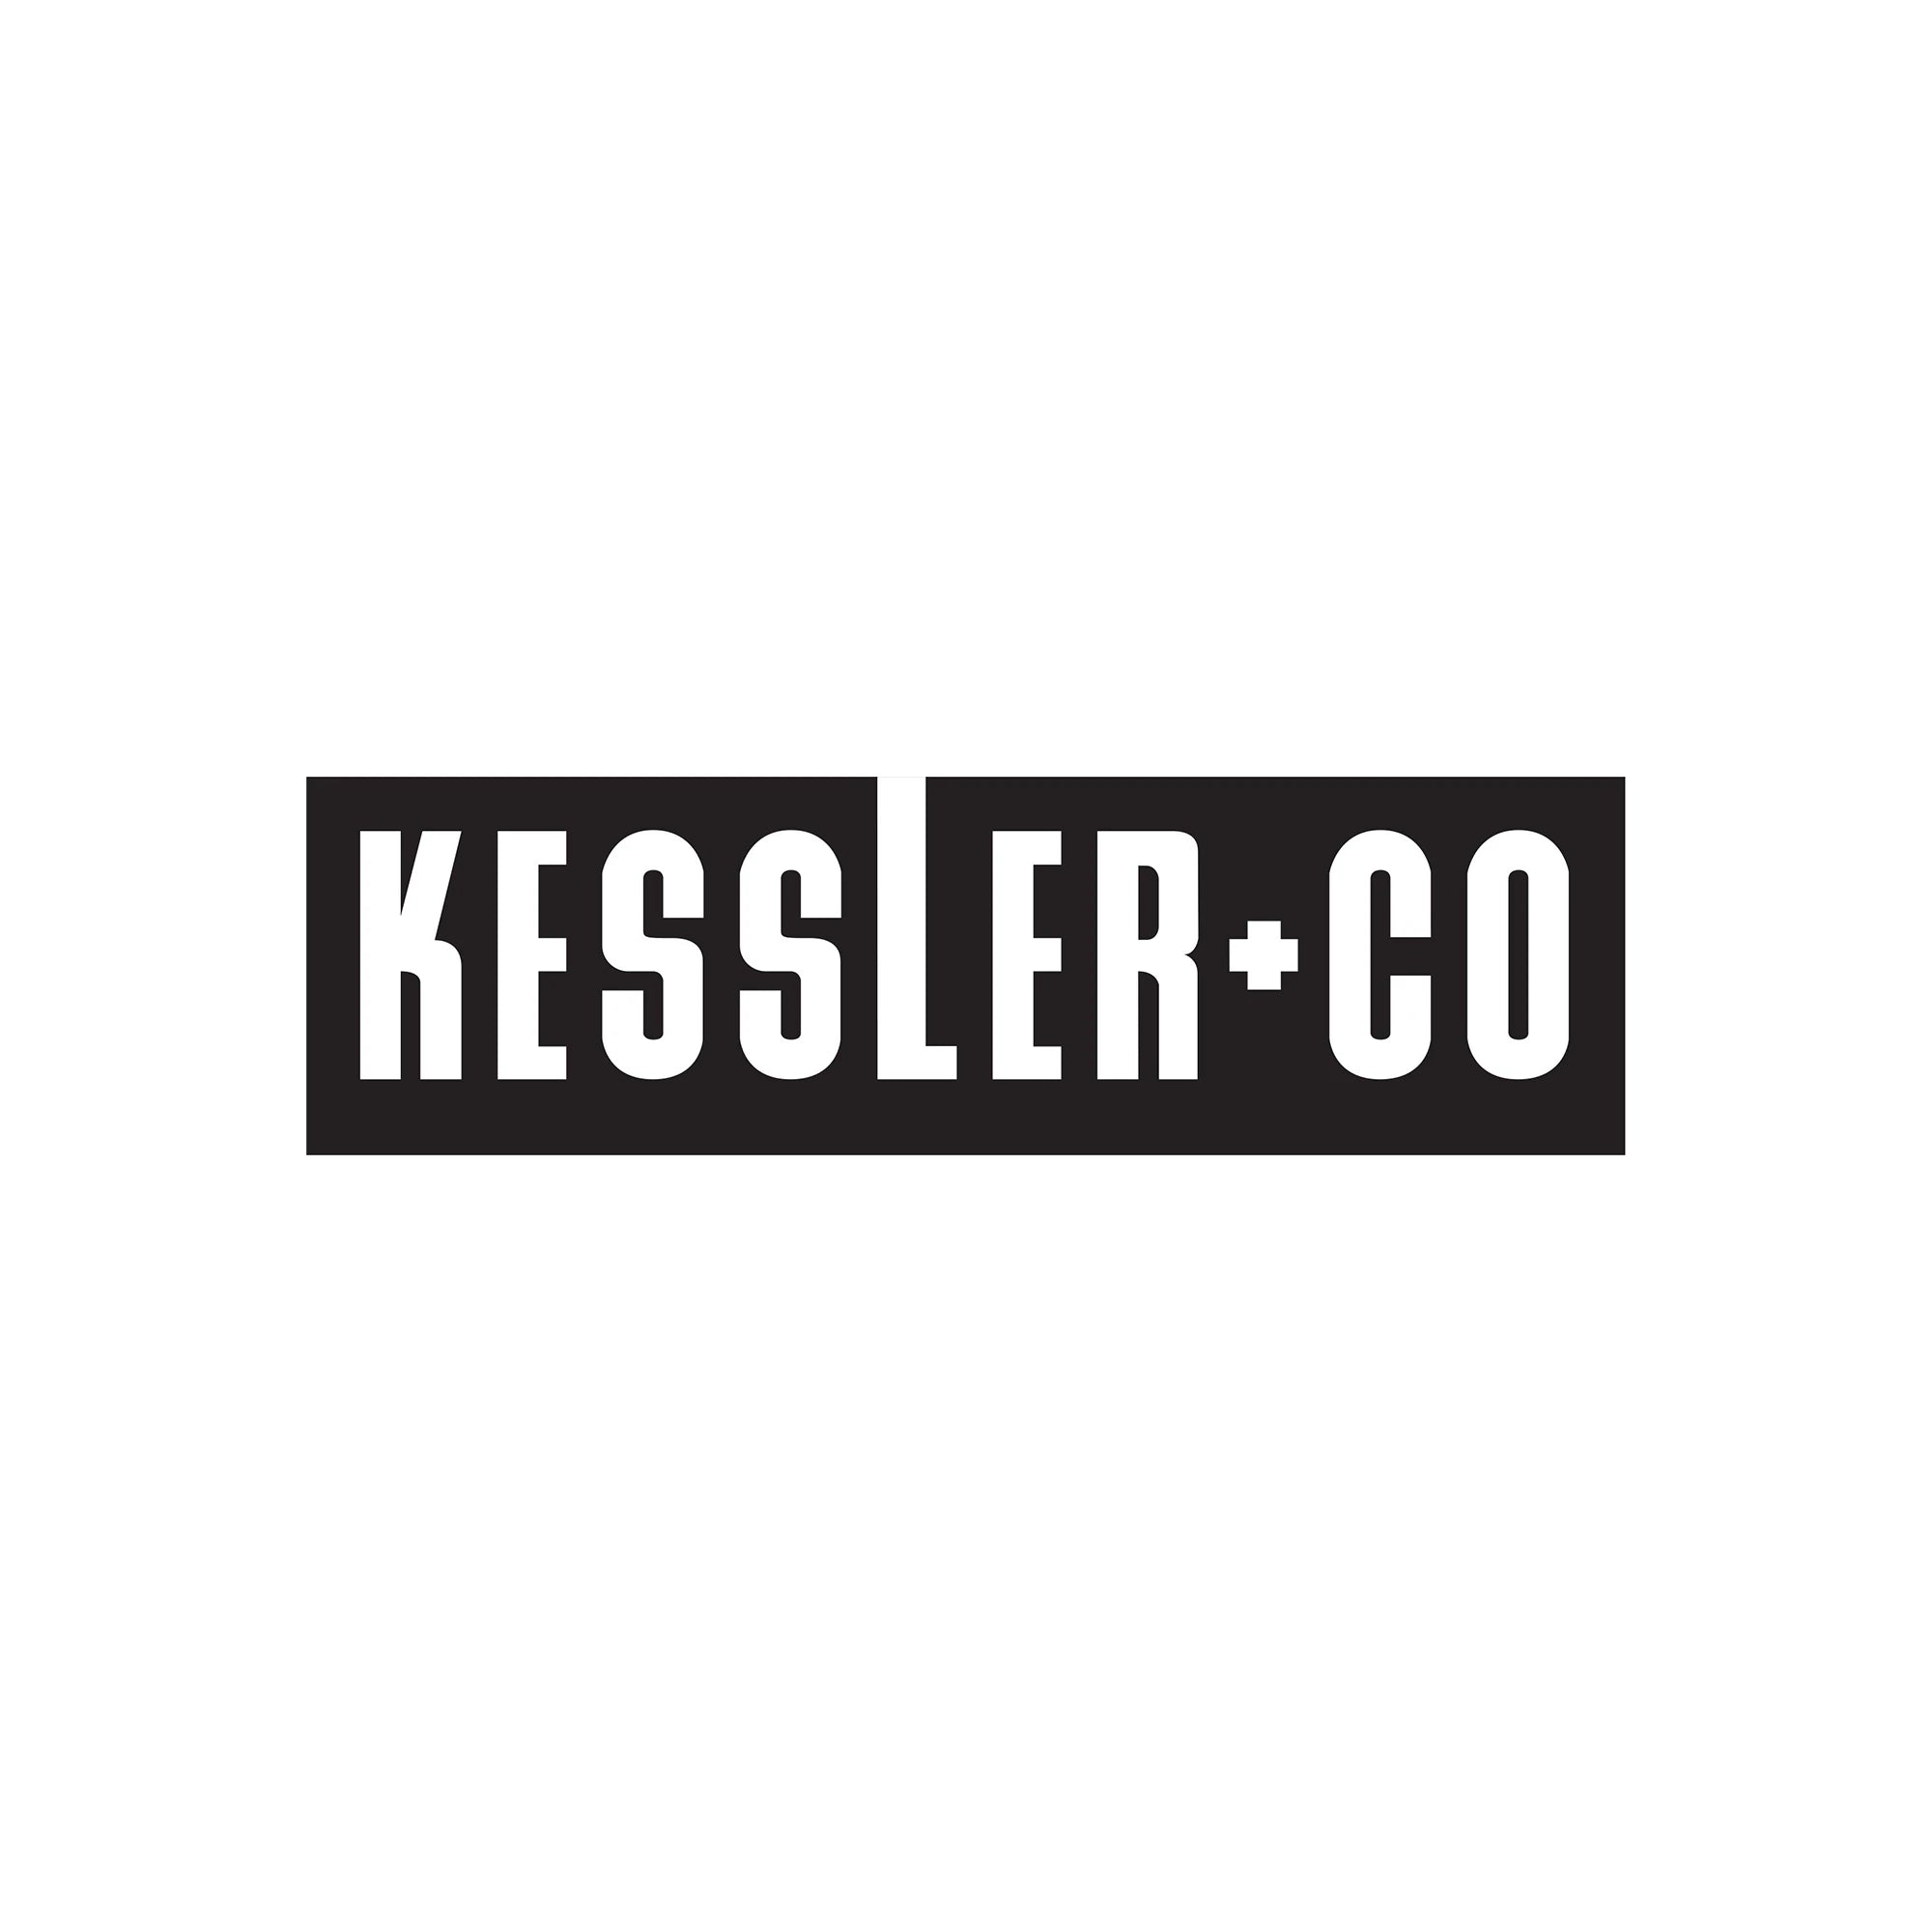 Kessler Parts - Mitchell Webshop